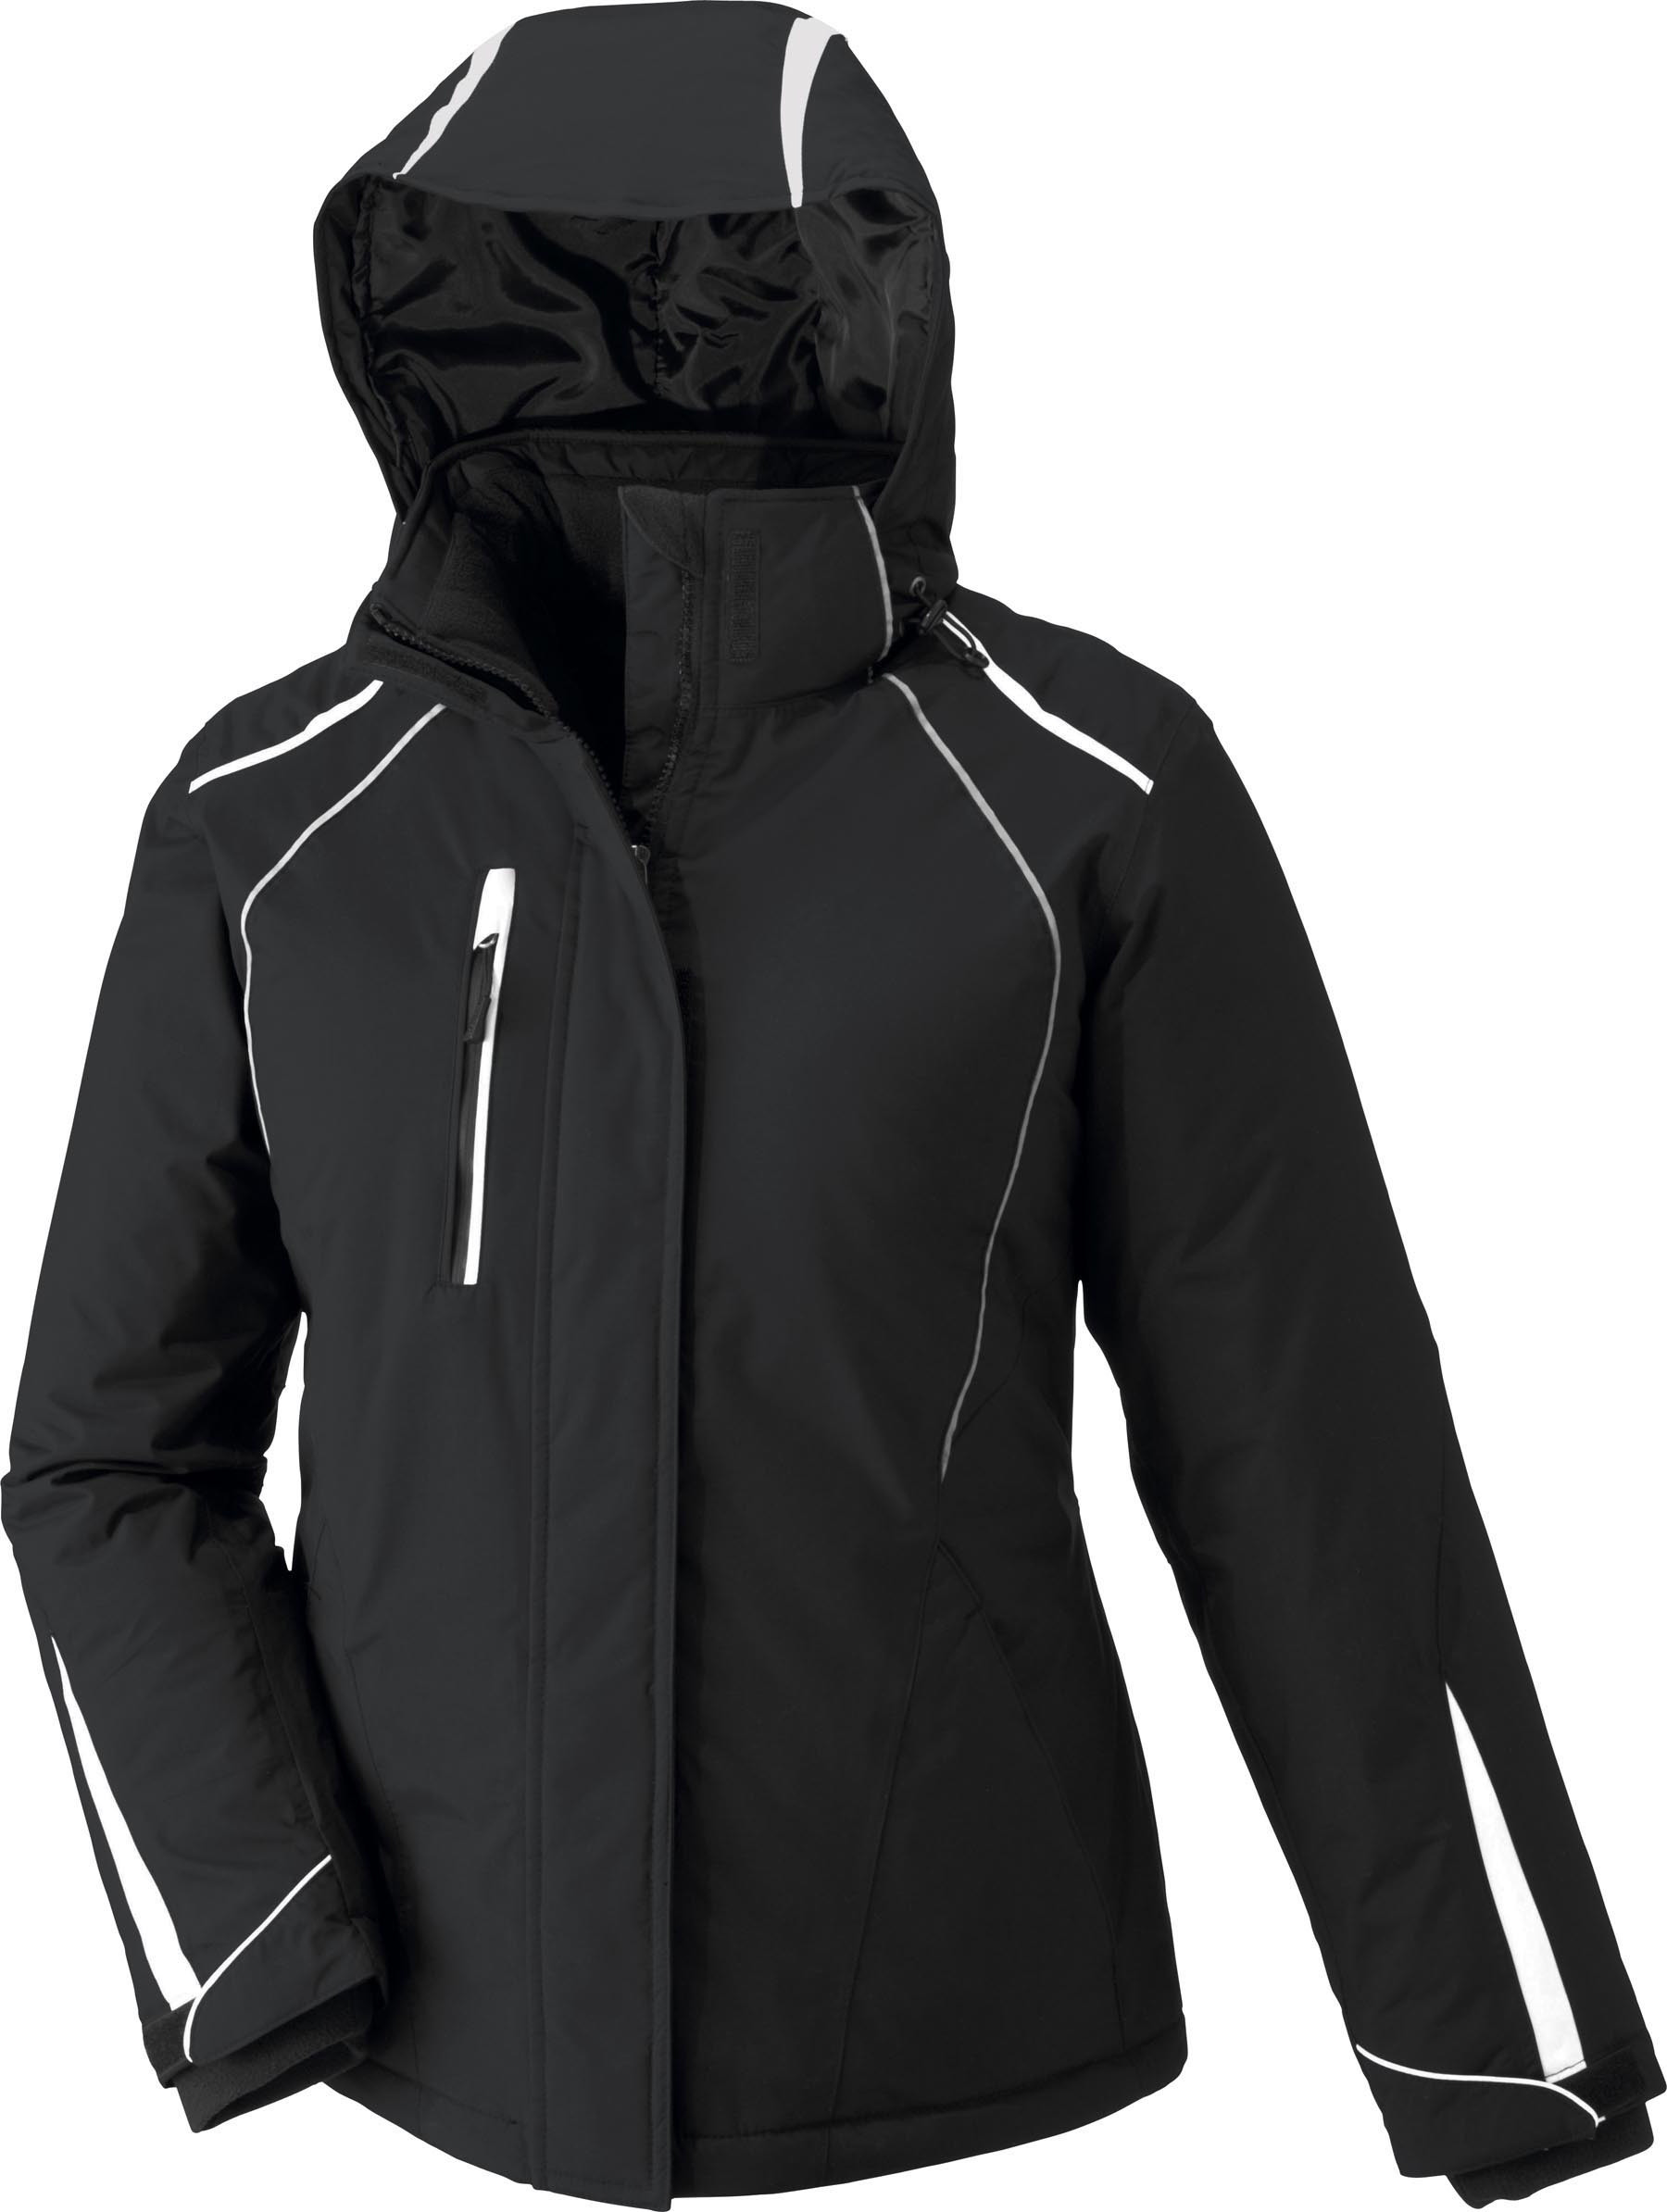 Ash City UTK 3 Warm.Logik 78652 - Altitude Ladies' Seam-Sealed Insulated Jacket